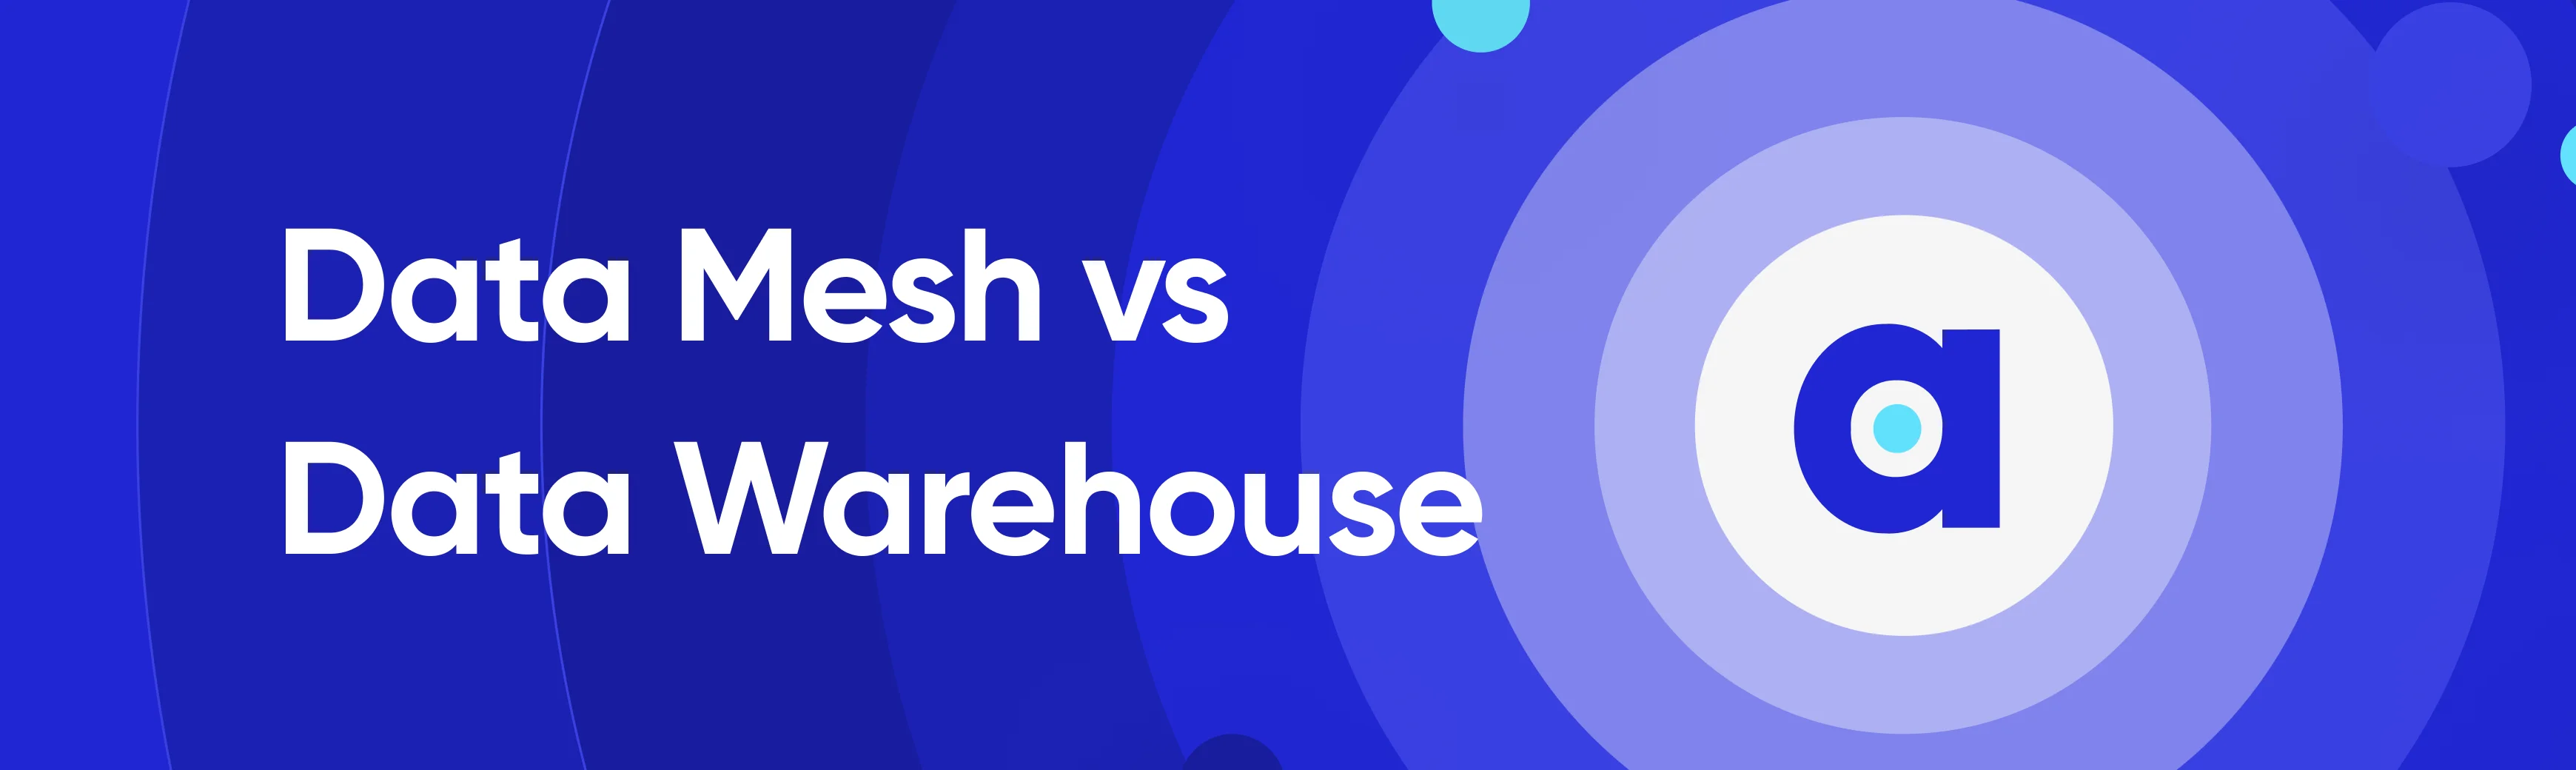 Data Mesh vs Data Warehouse